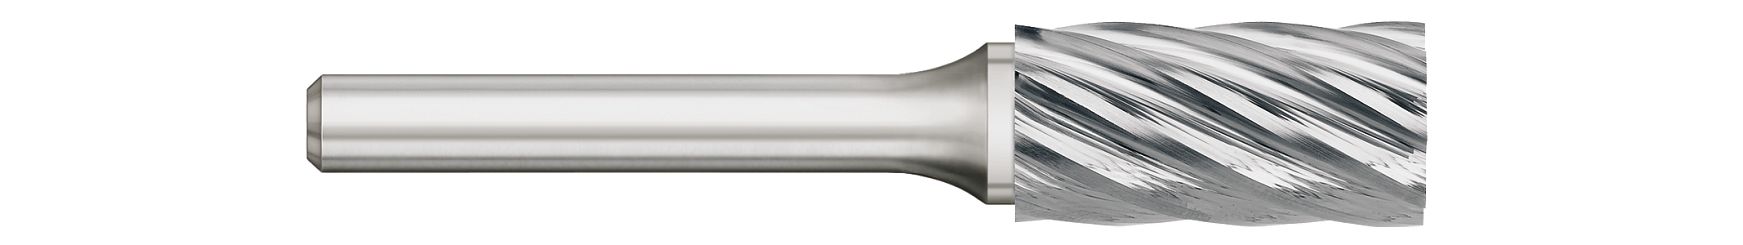 Burs-Cylindrical-SA-For Aluminum